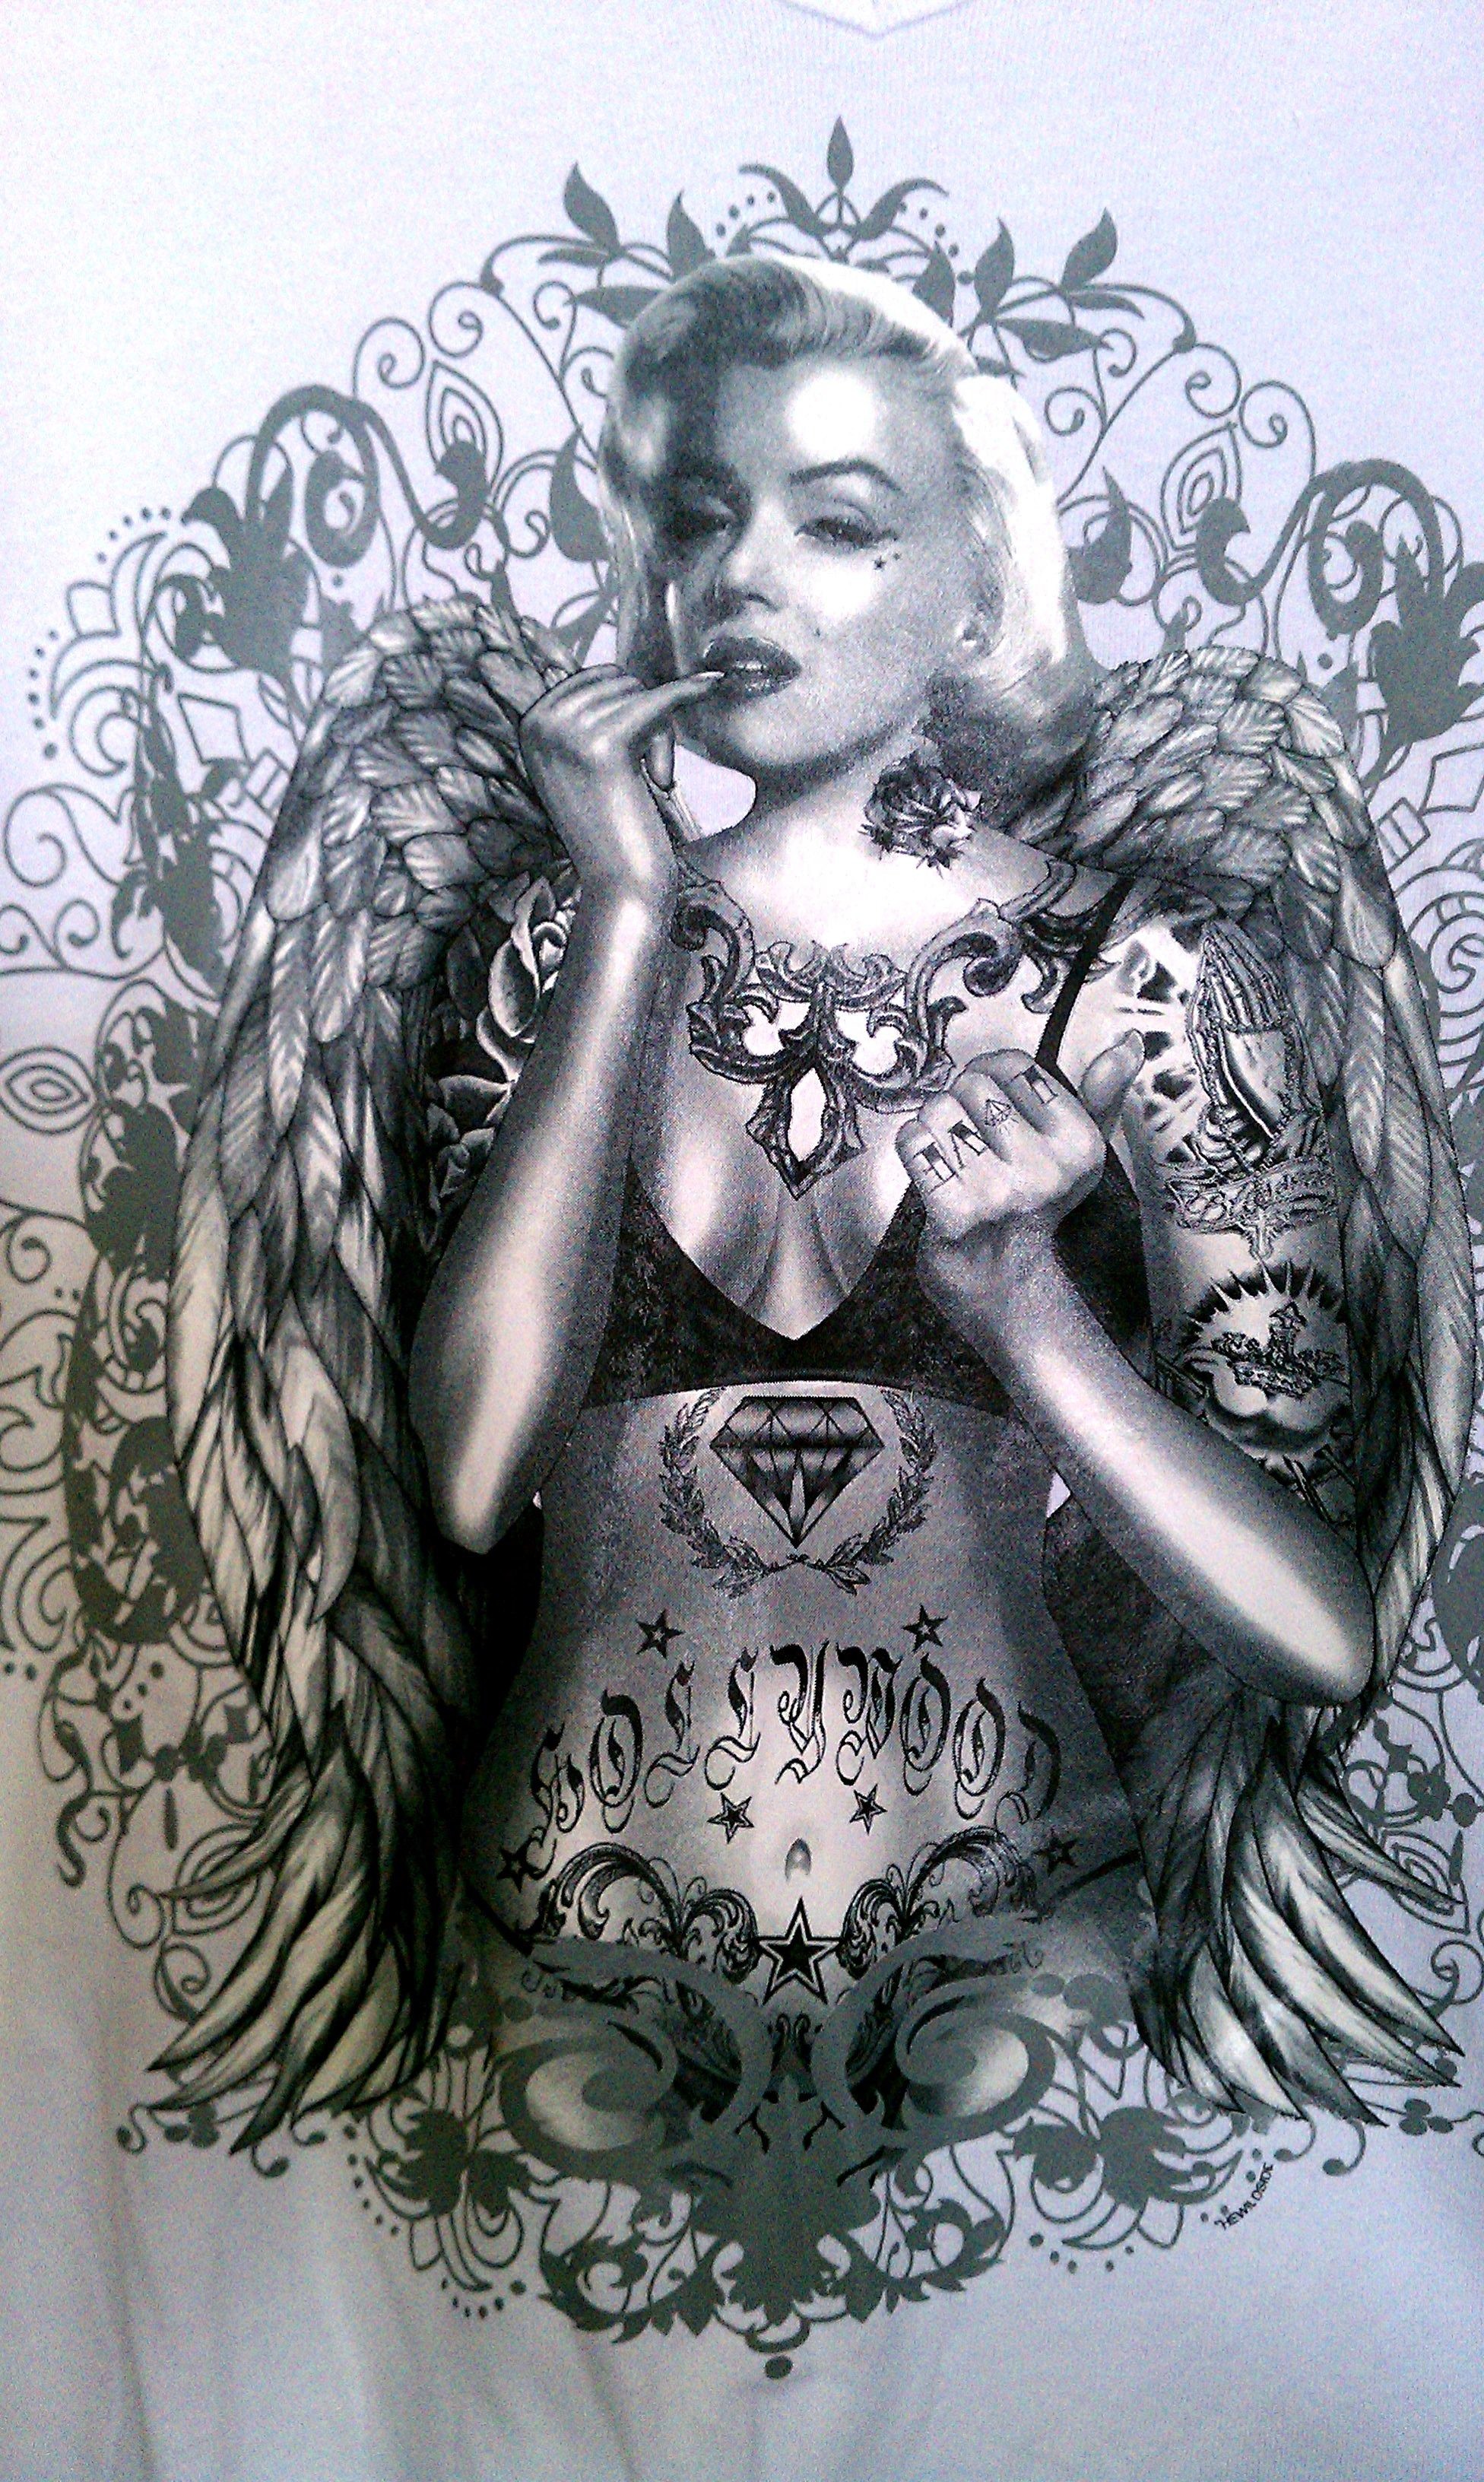 Tattooed Marilyn Monroe Wallpaper Image